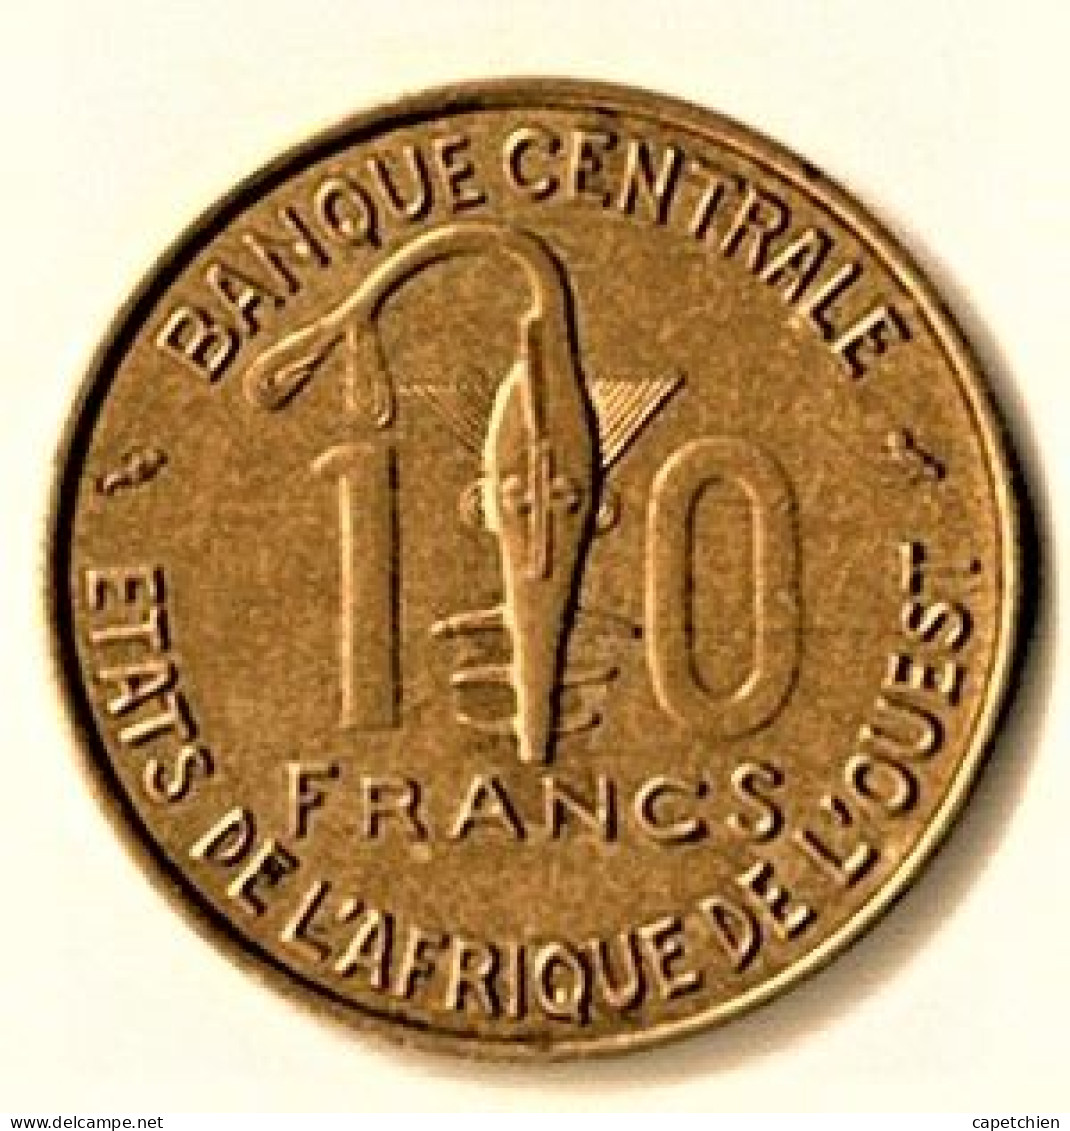 ETAT DE L'AFRIQUE DE L'OUEST / 10 FRANCS / 1969 - Afrique Occidentale Française